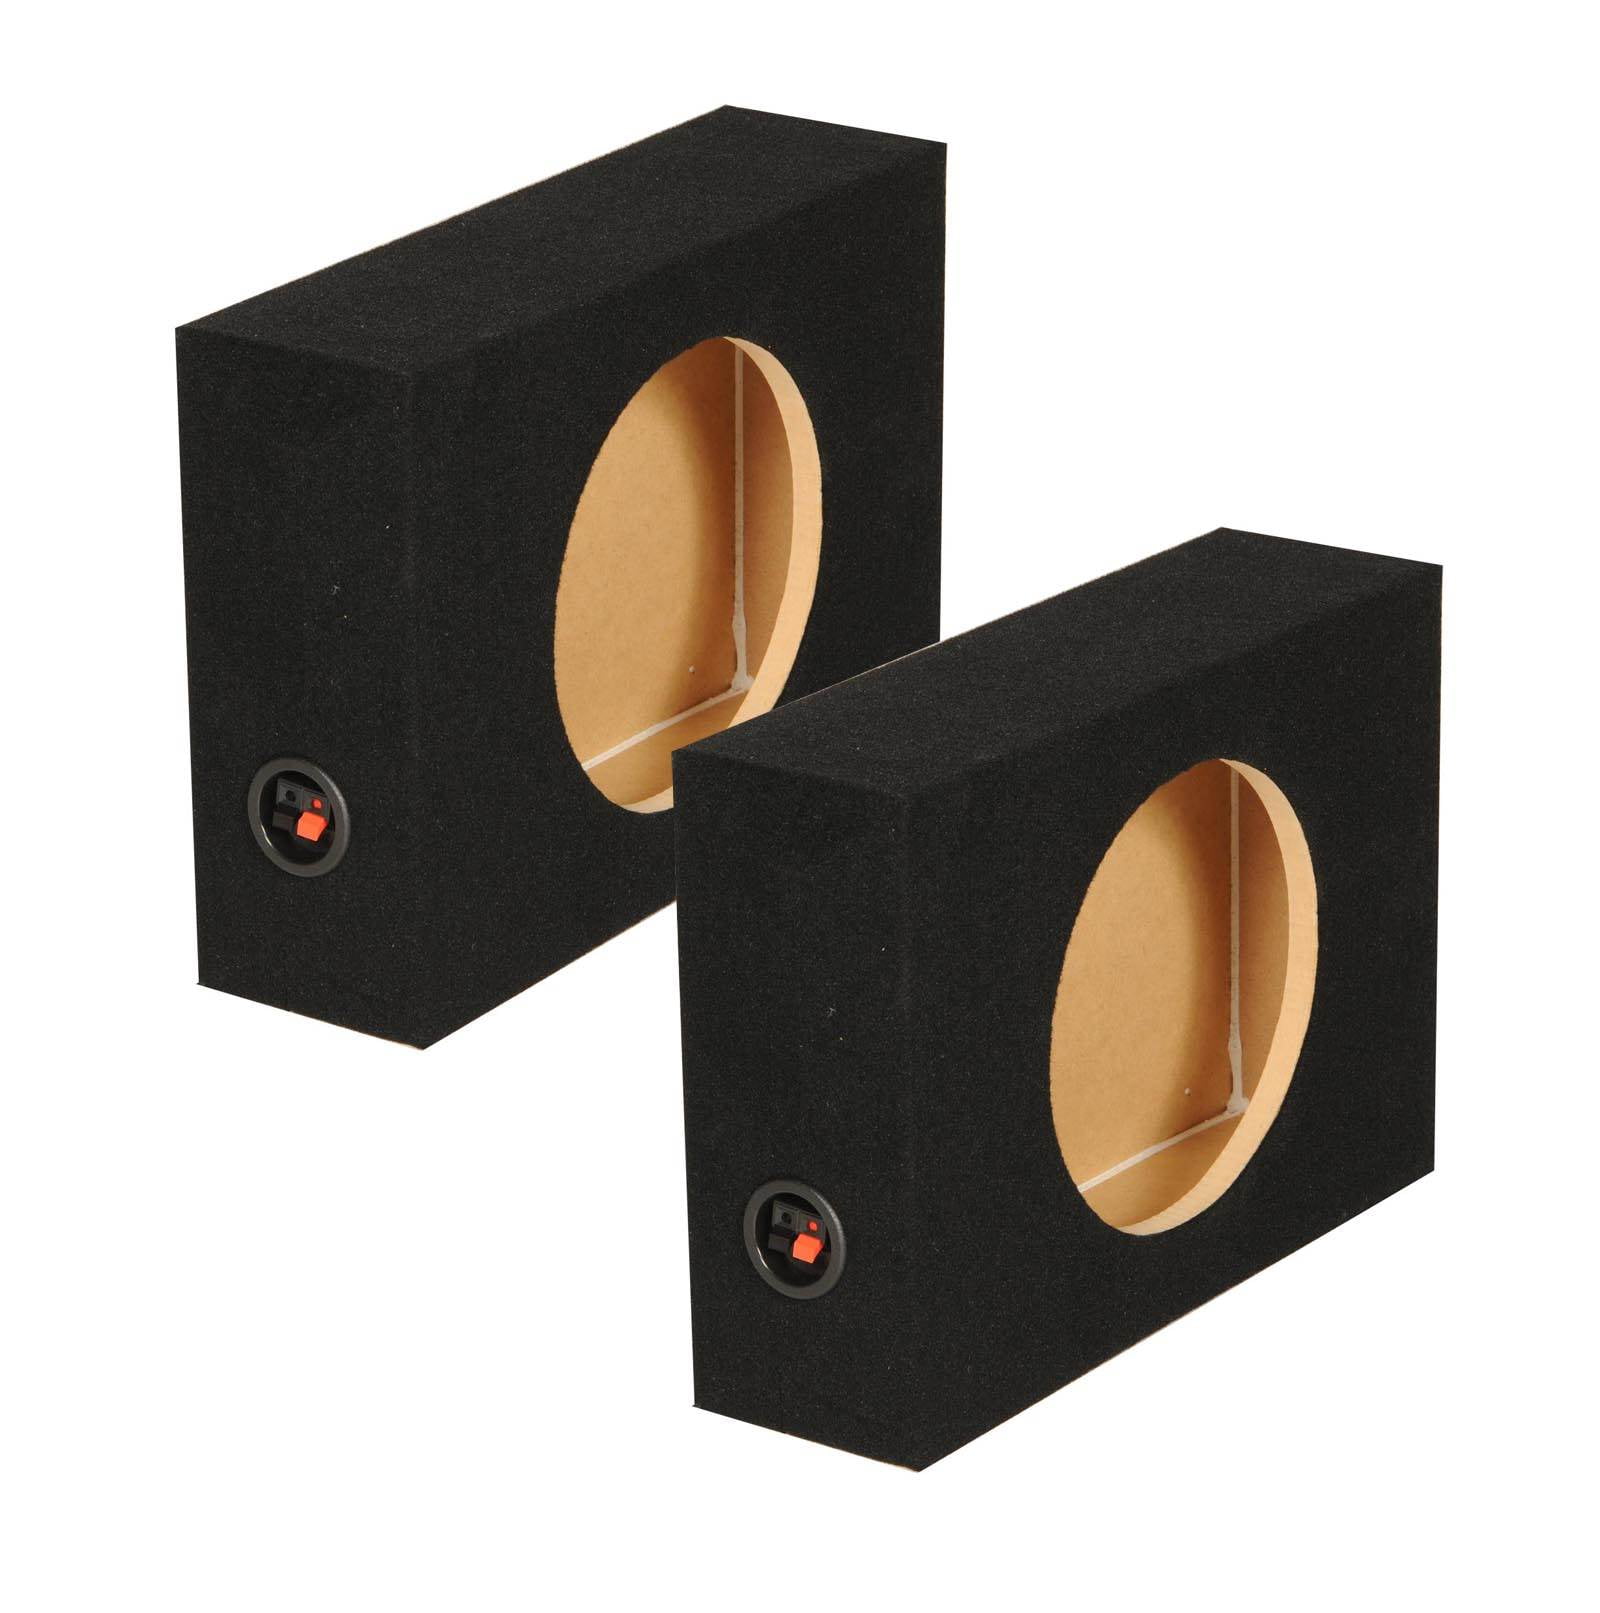 speaker enclosure design 5 inch